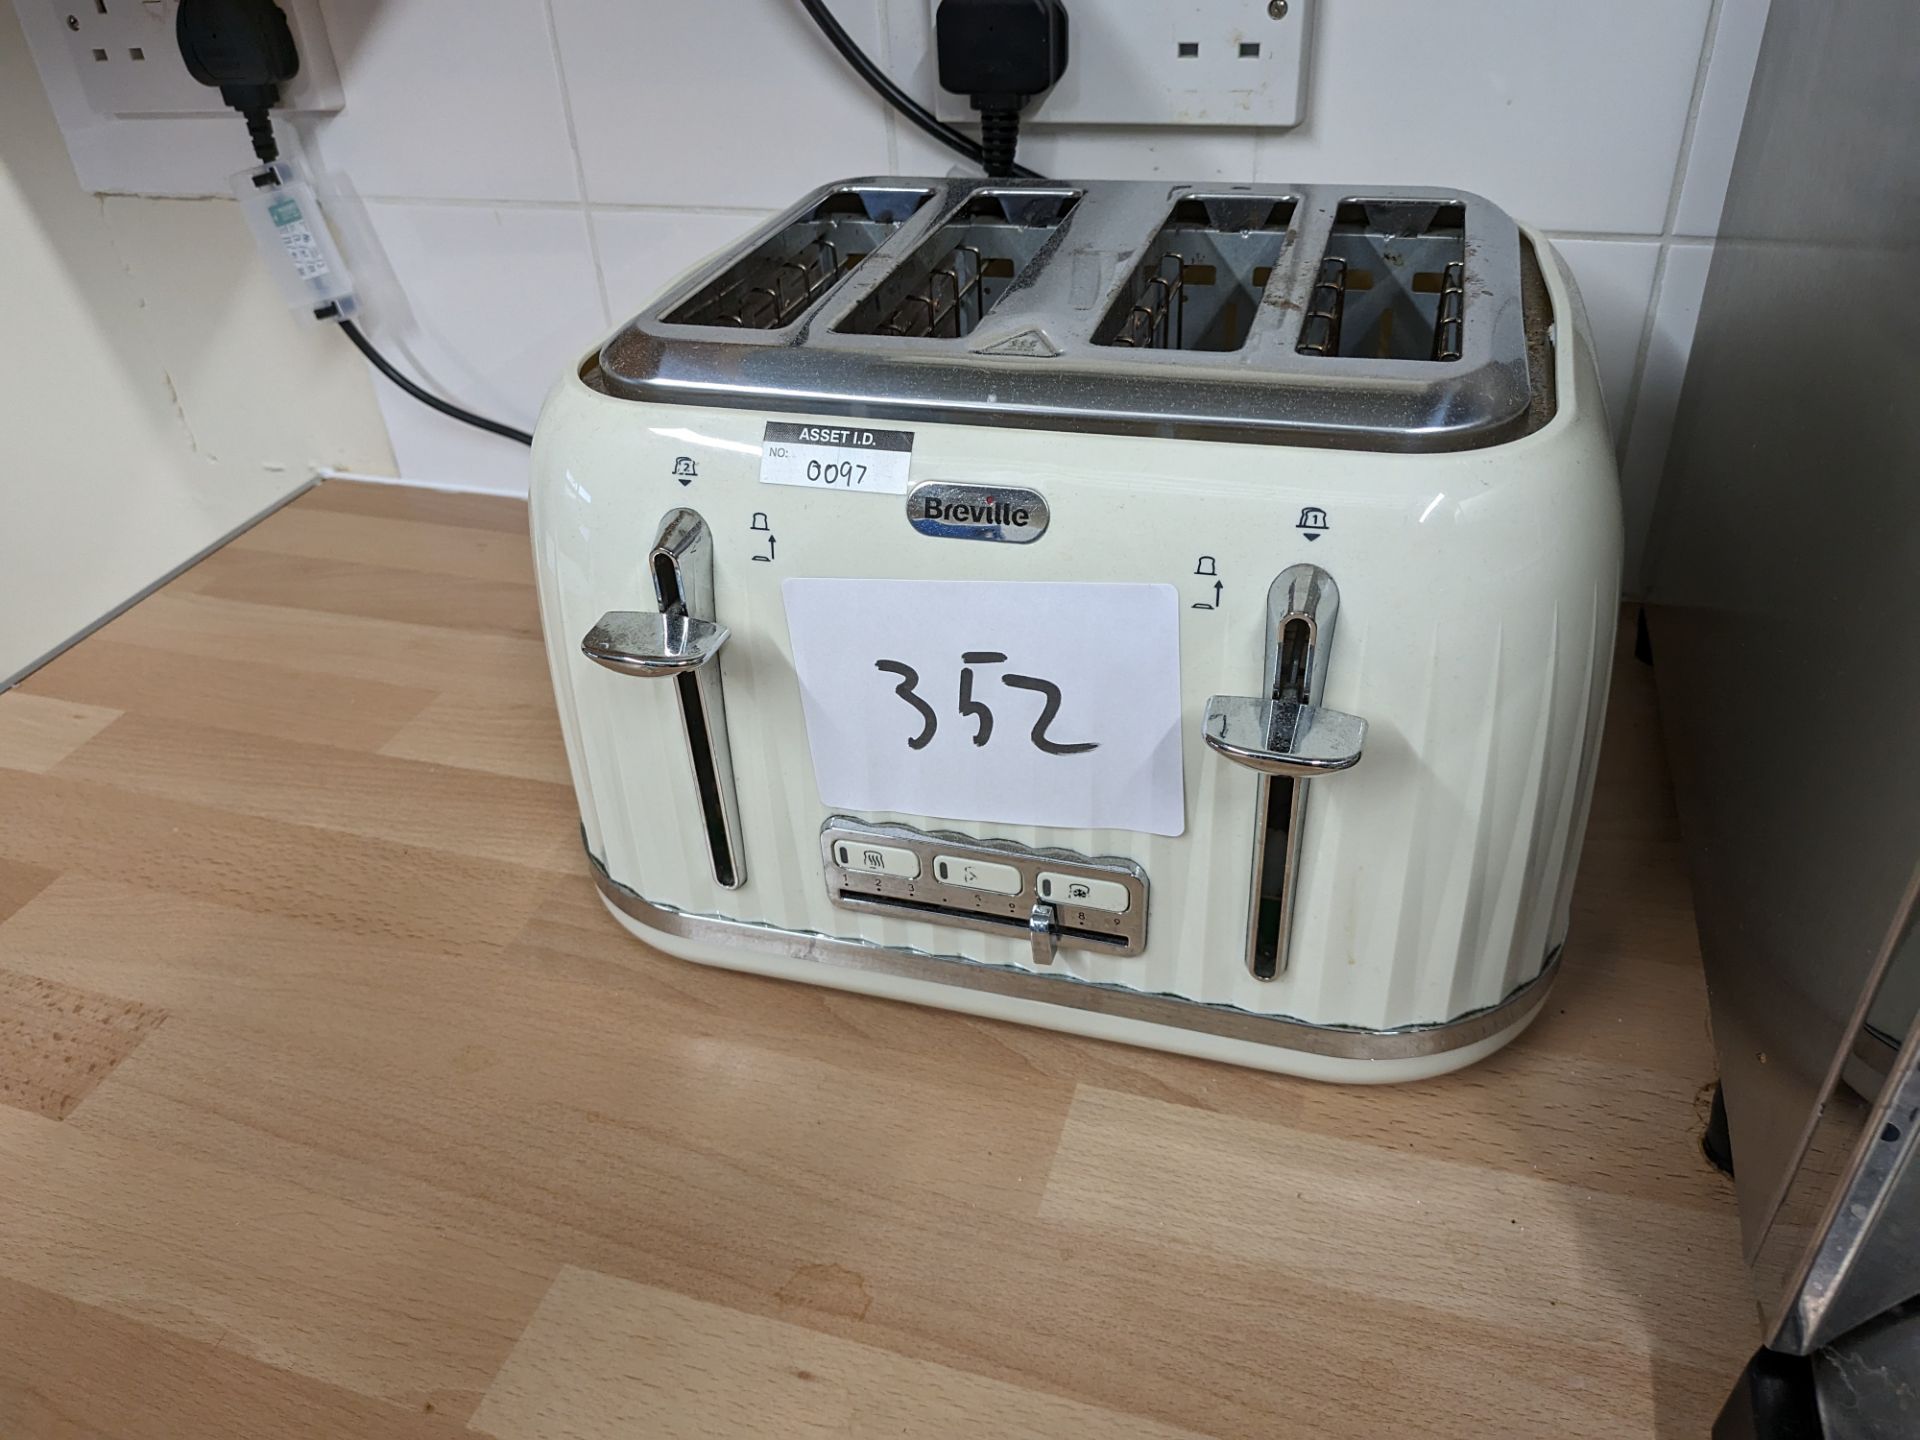 1: Breville 4-slice toaster